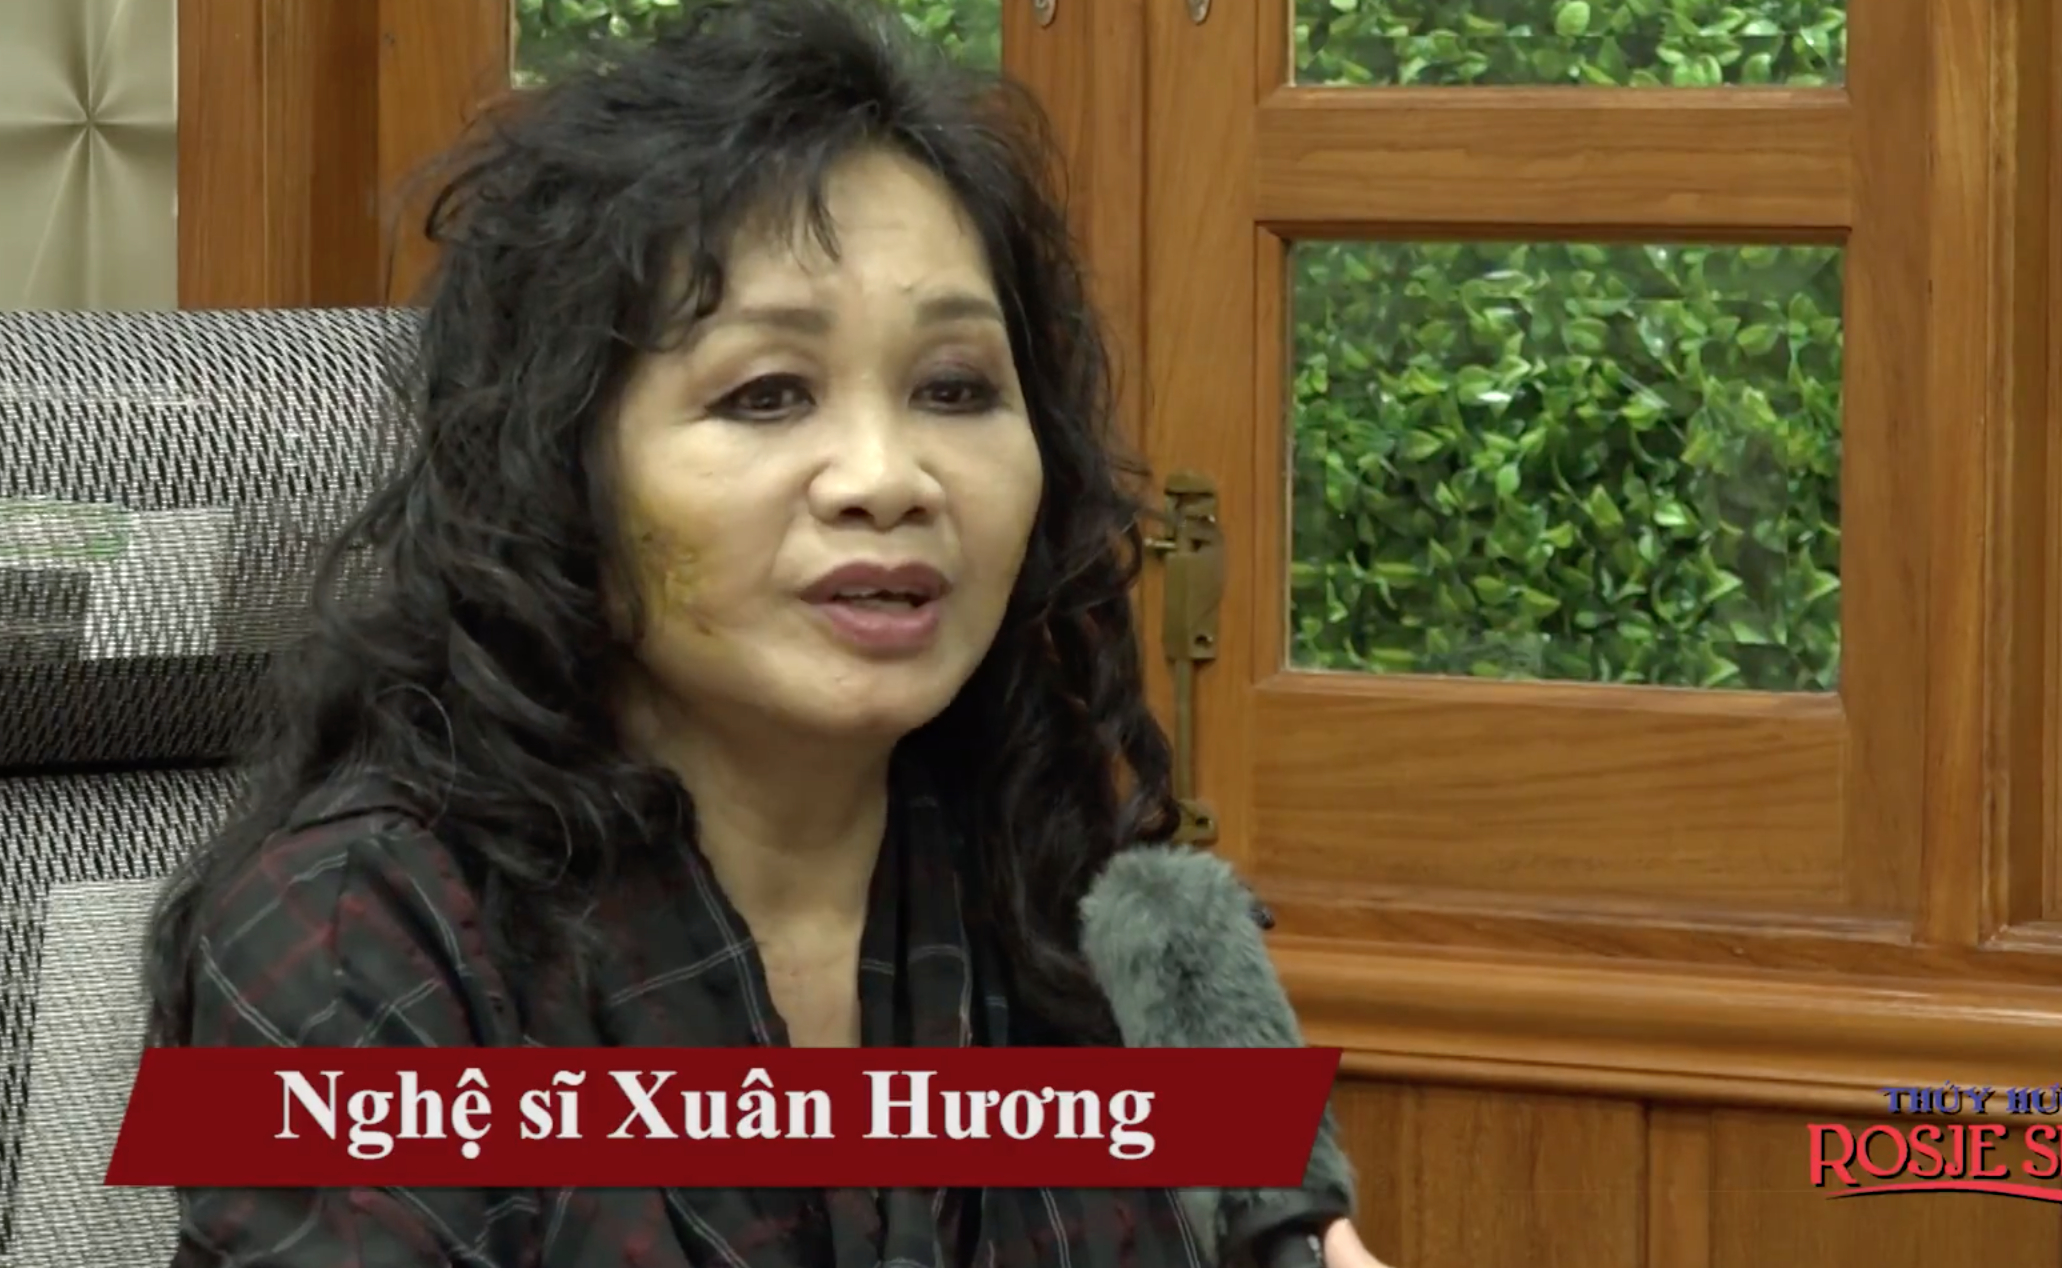 Nghệ sĩ Xuân Hương chia sẻ về những xáo trộn trong cuộc sống từ khủng hoảng truyền thông trên mạng.